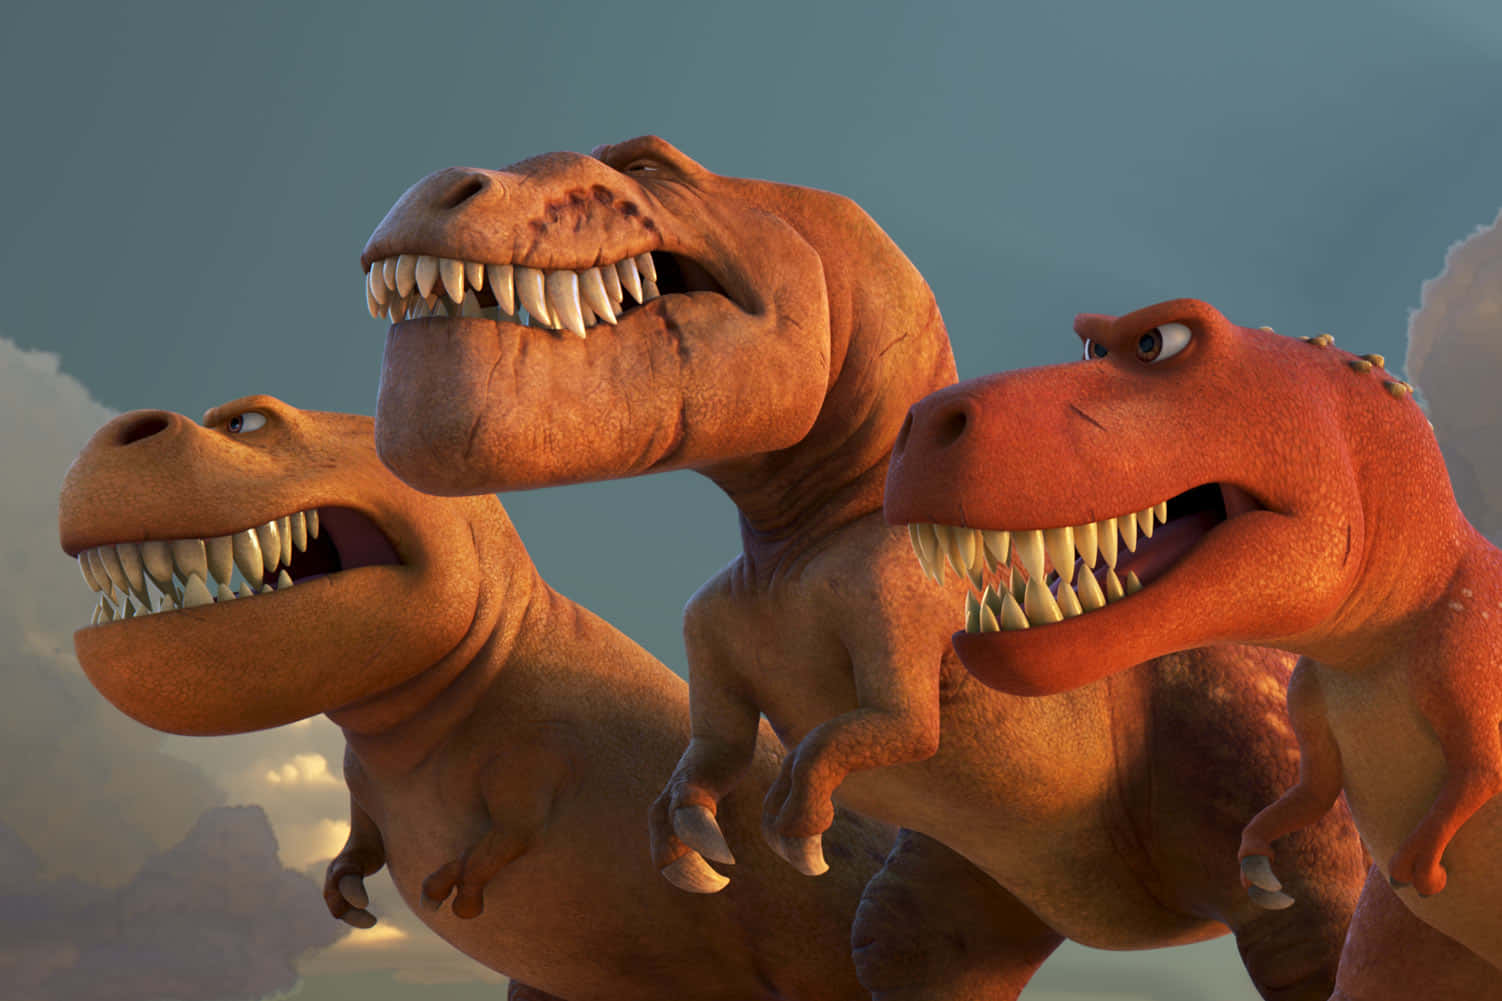 Altarisoluzione Di Un'illustrazione 3d Di Un Dinosauro Erbivoro Nel Suo Ambiente Naturale.